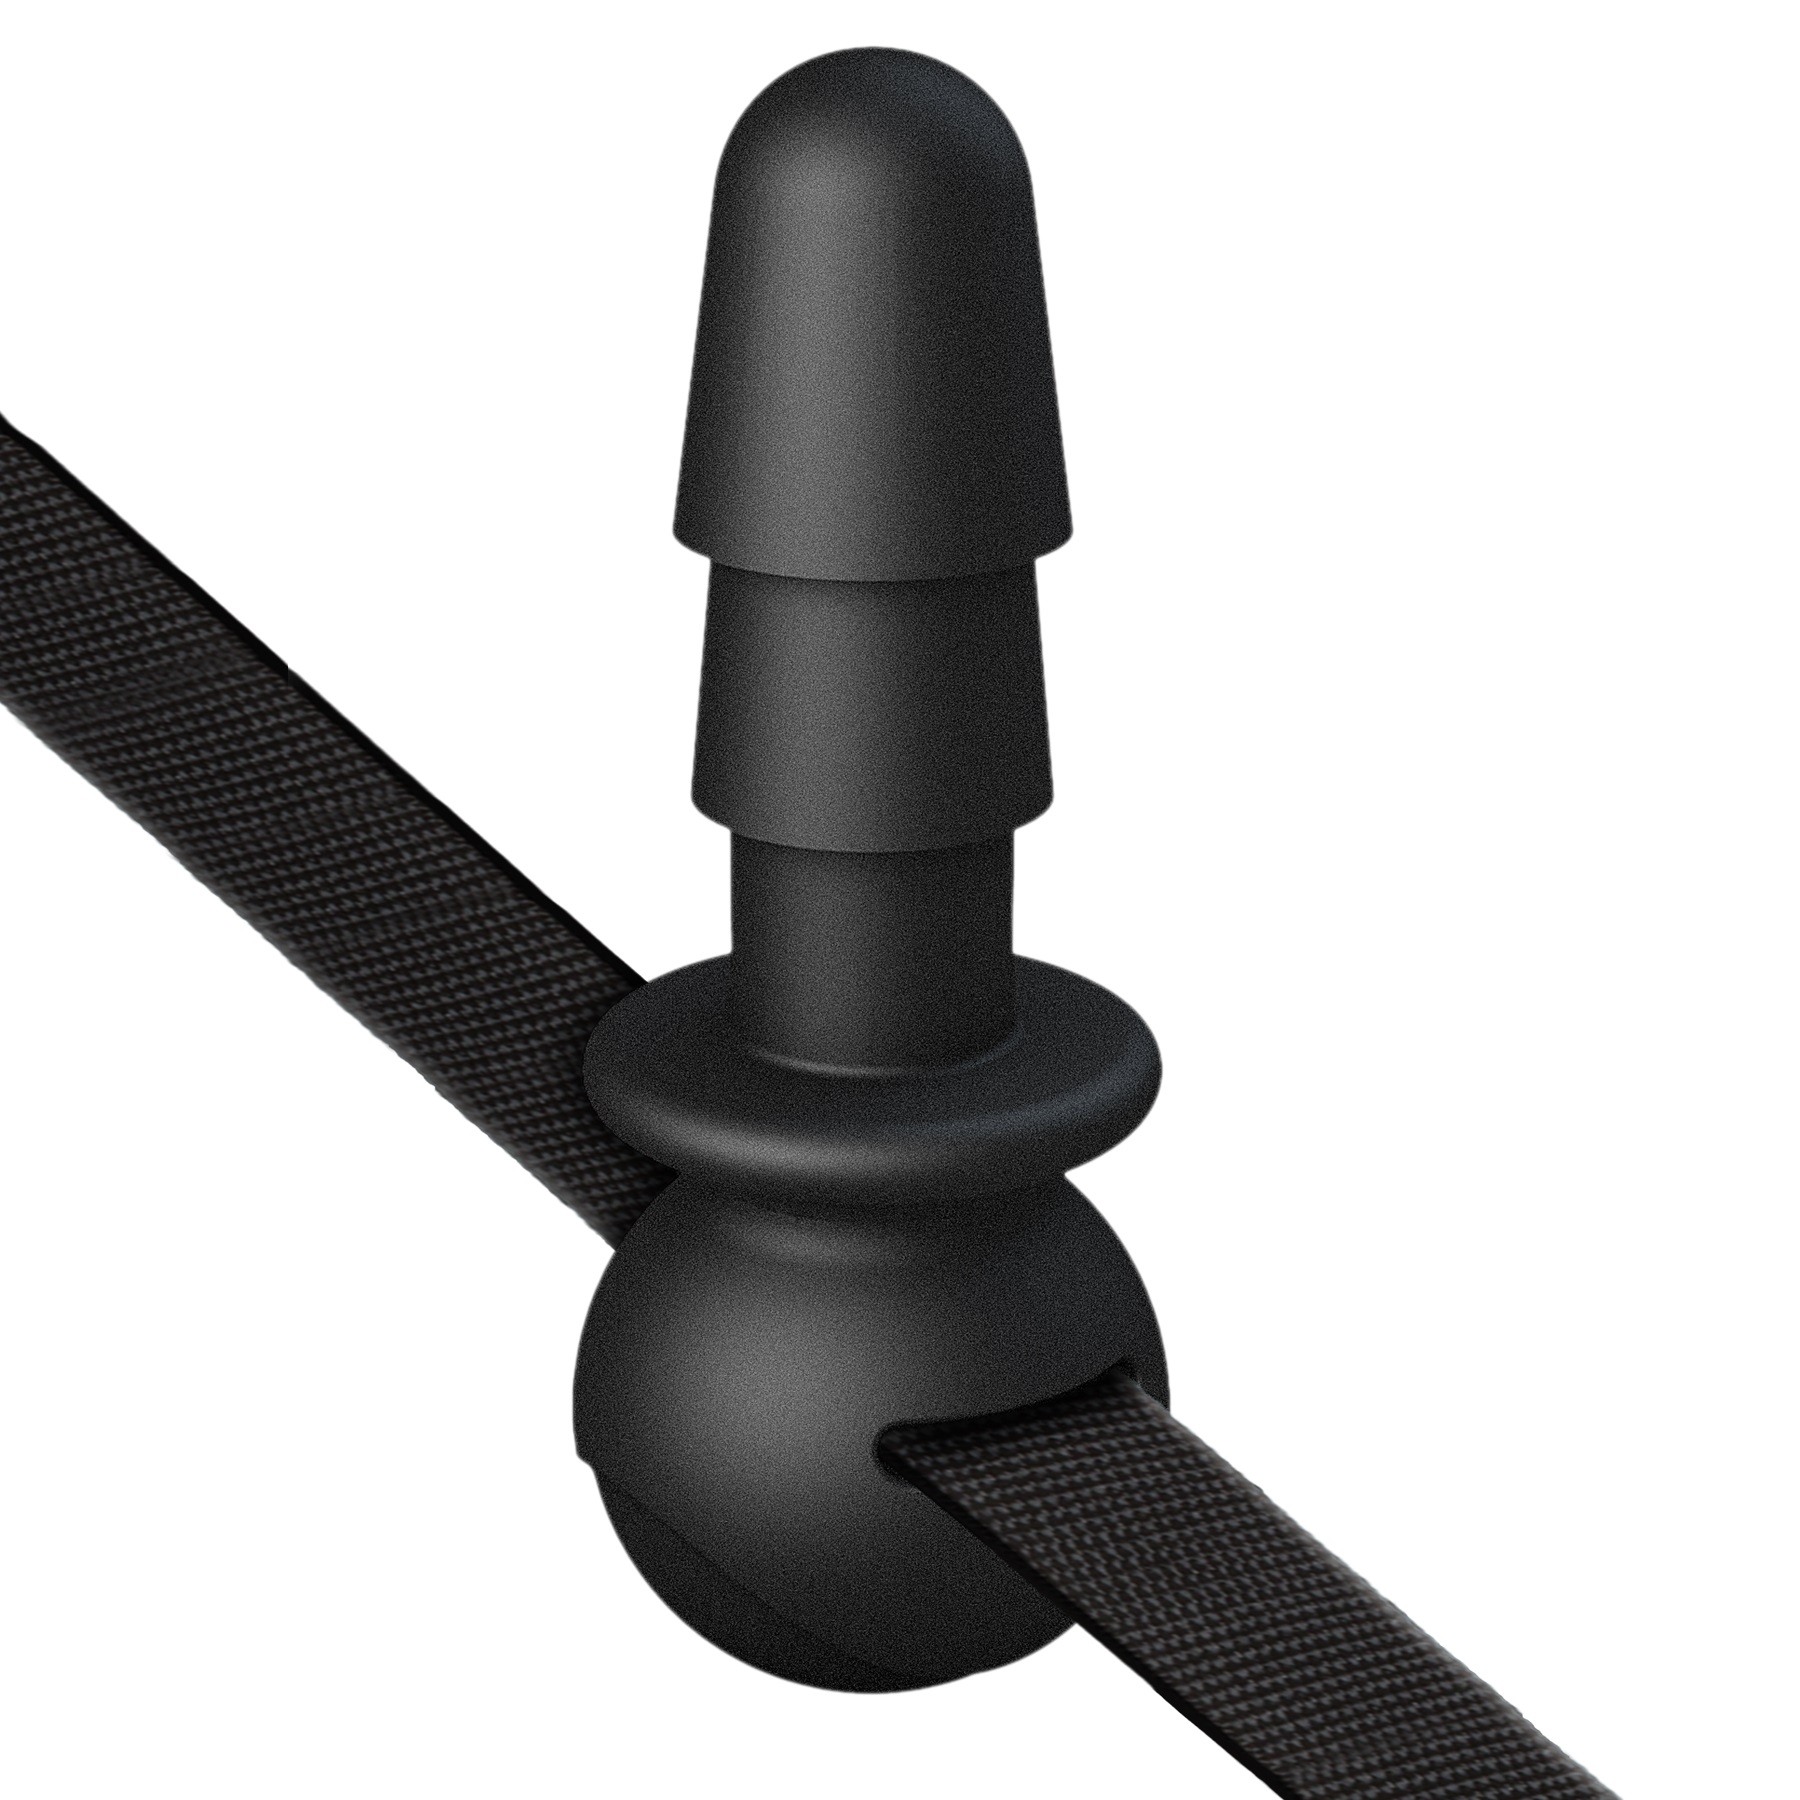 Vac-U-Lock Silicone Ball Gag With Plug